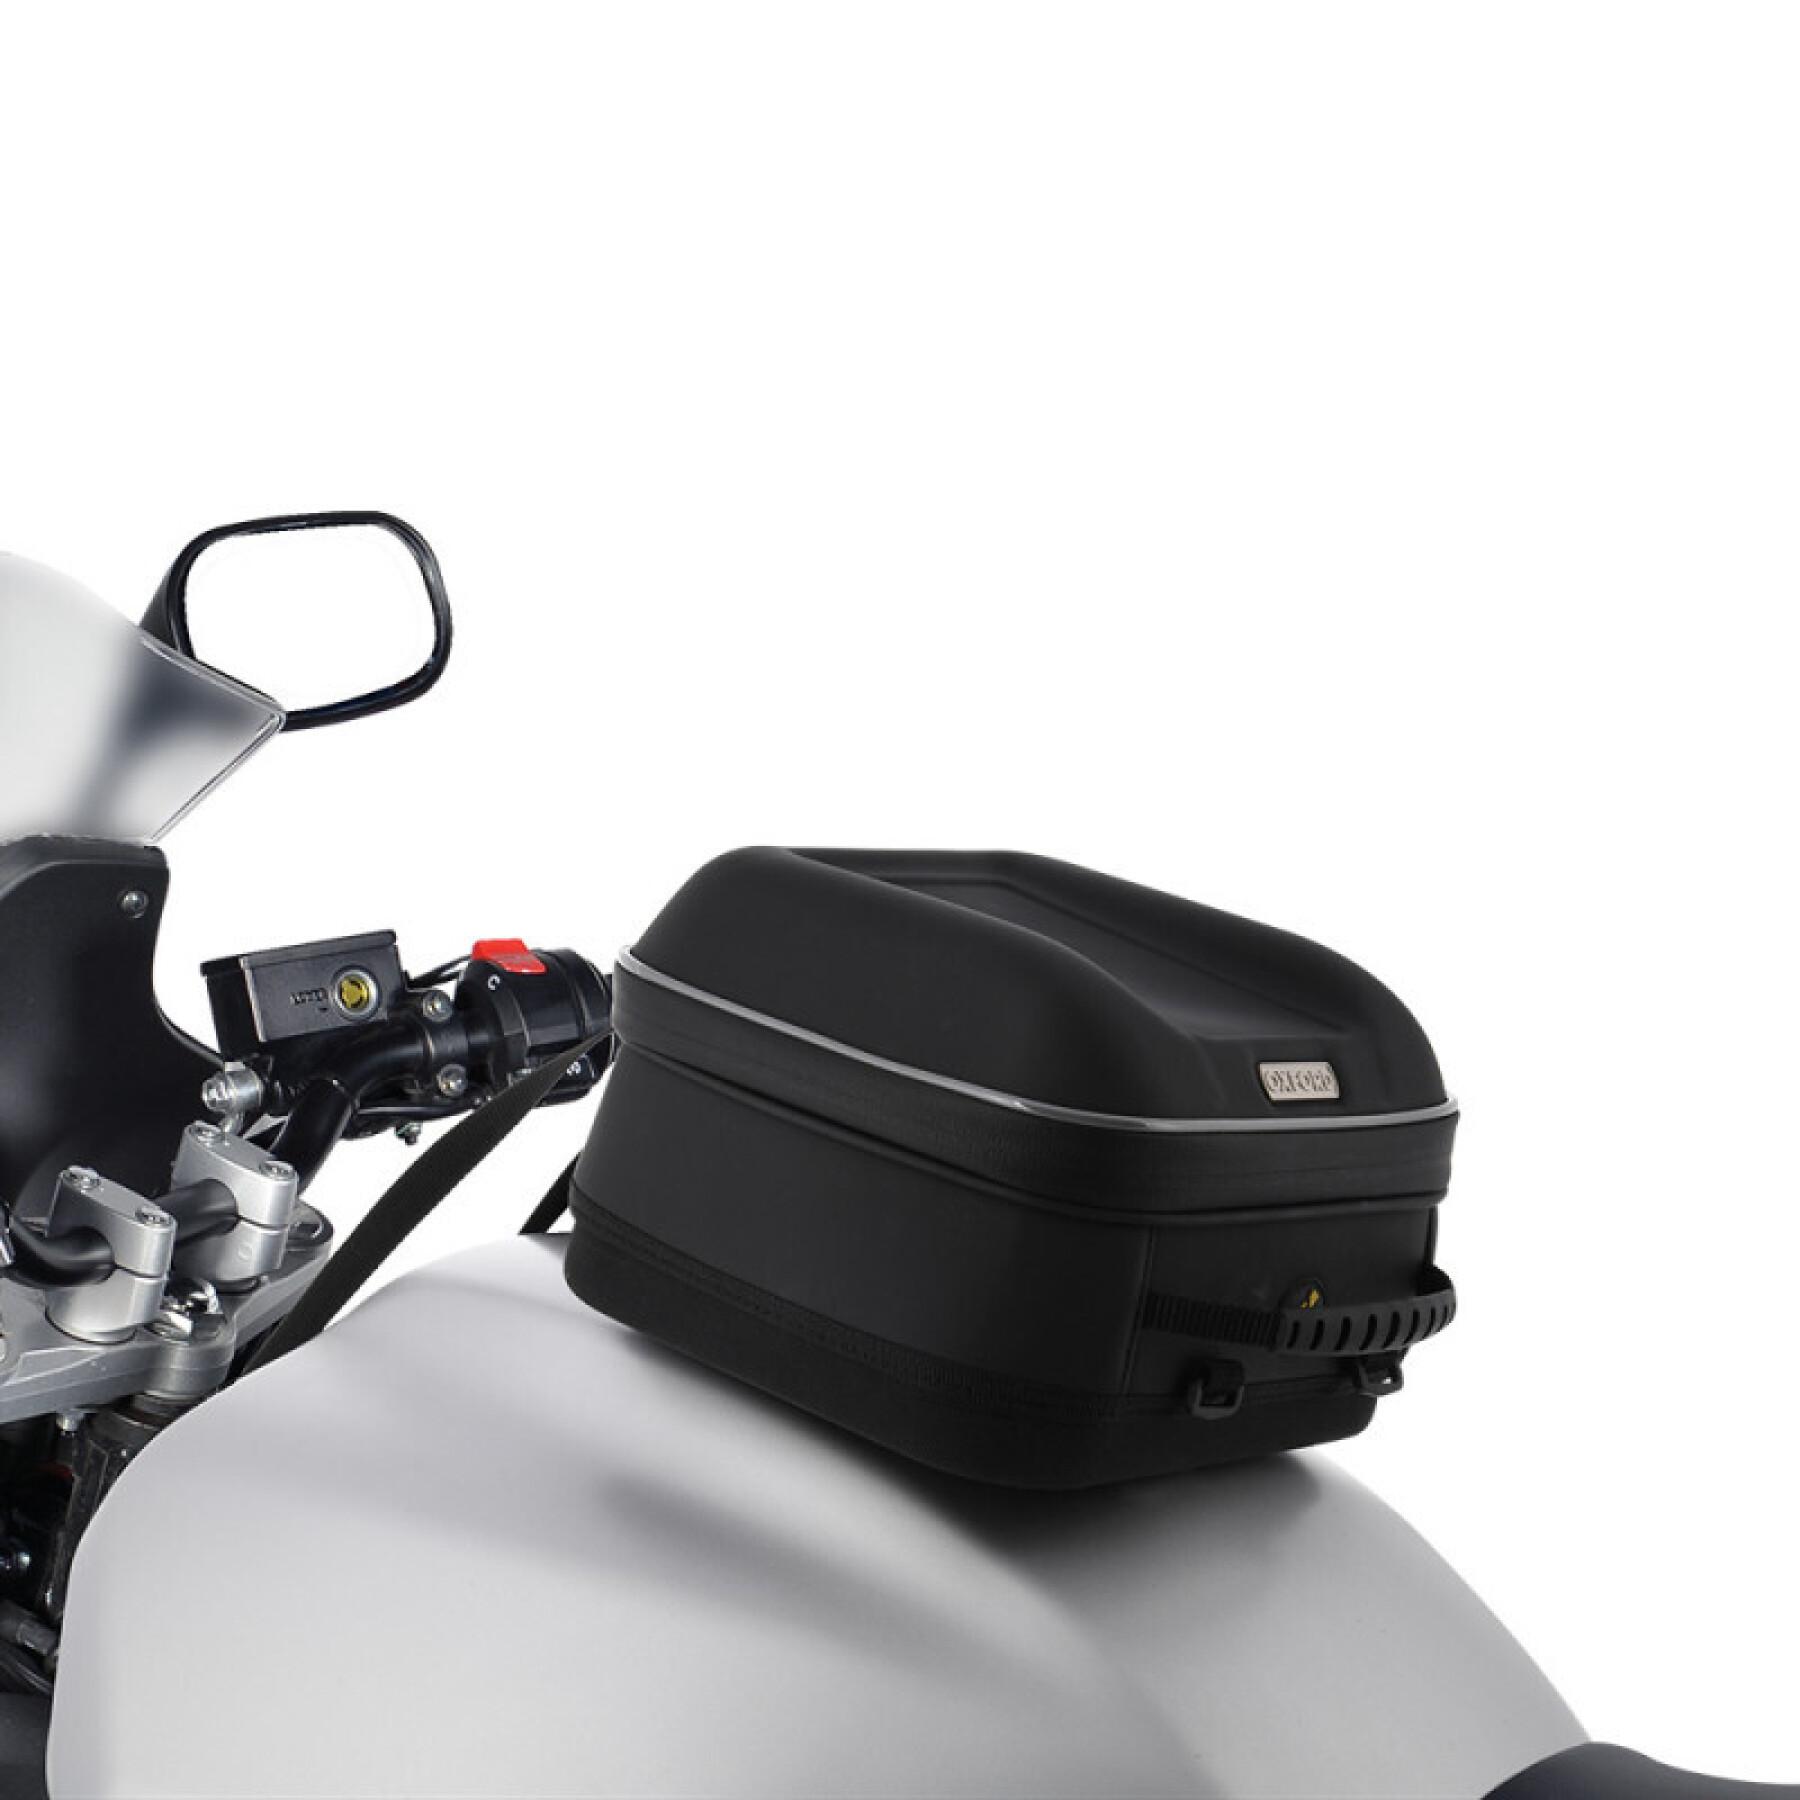 Sacoche de réservoir moto Oxford S-Series Q4s